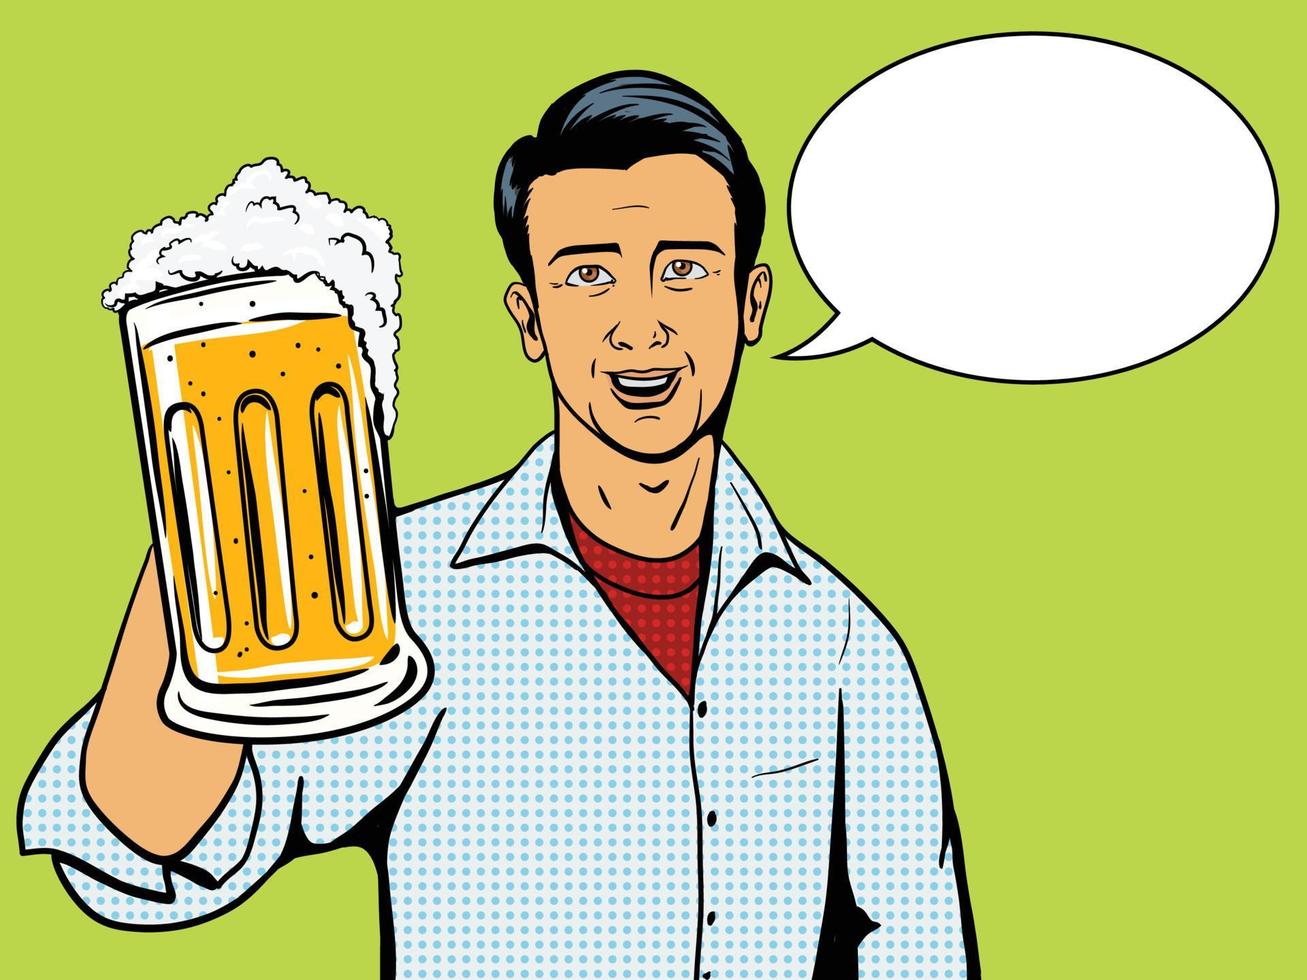 homem oferece ilustração em vetor estilo pop art copo de cerveja. imitação do estilo de quadrinhos